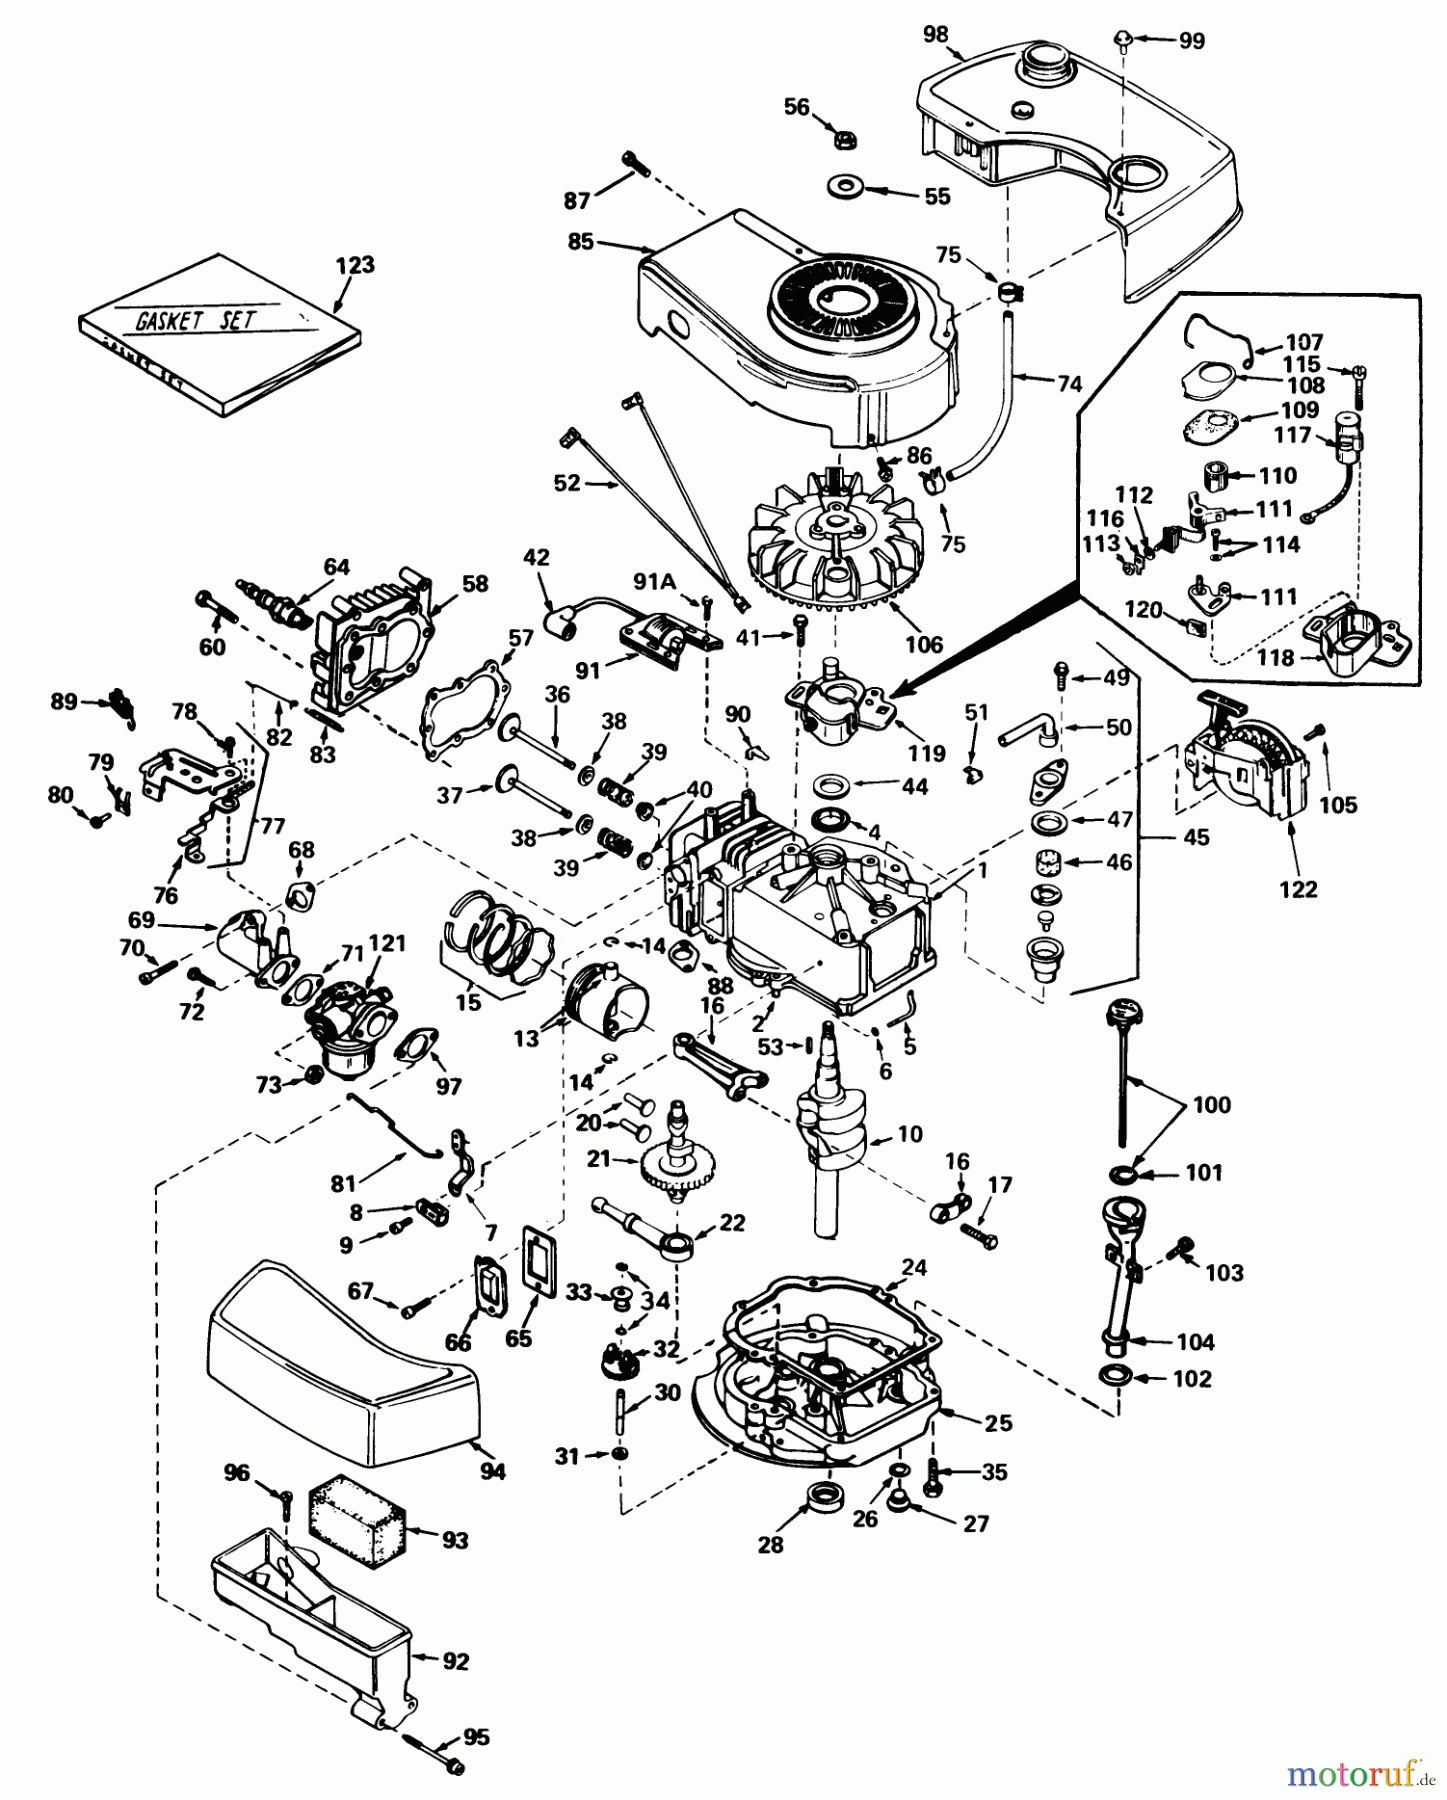  Toro Neu Mowers, Walk-Behind Seite 1 20700 - Toro Lawnmower, 1979 (9000001-9999999) ENGINE TECUMSEH MODEL NO. TNT-100-10049C